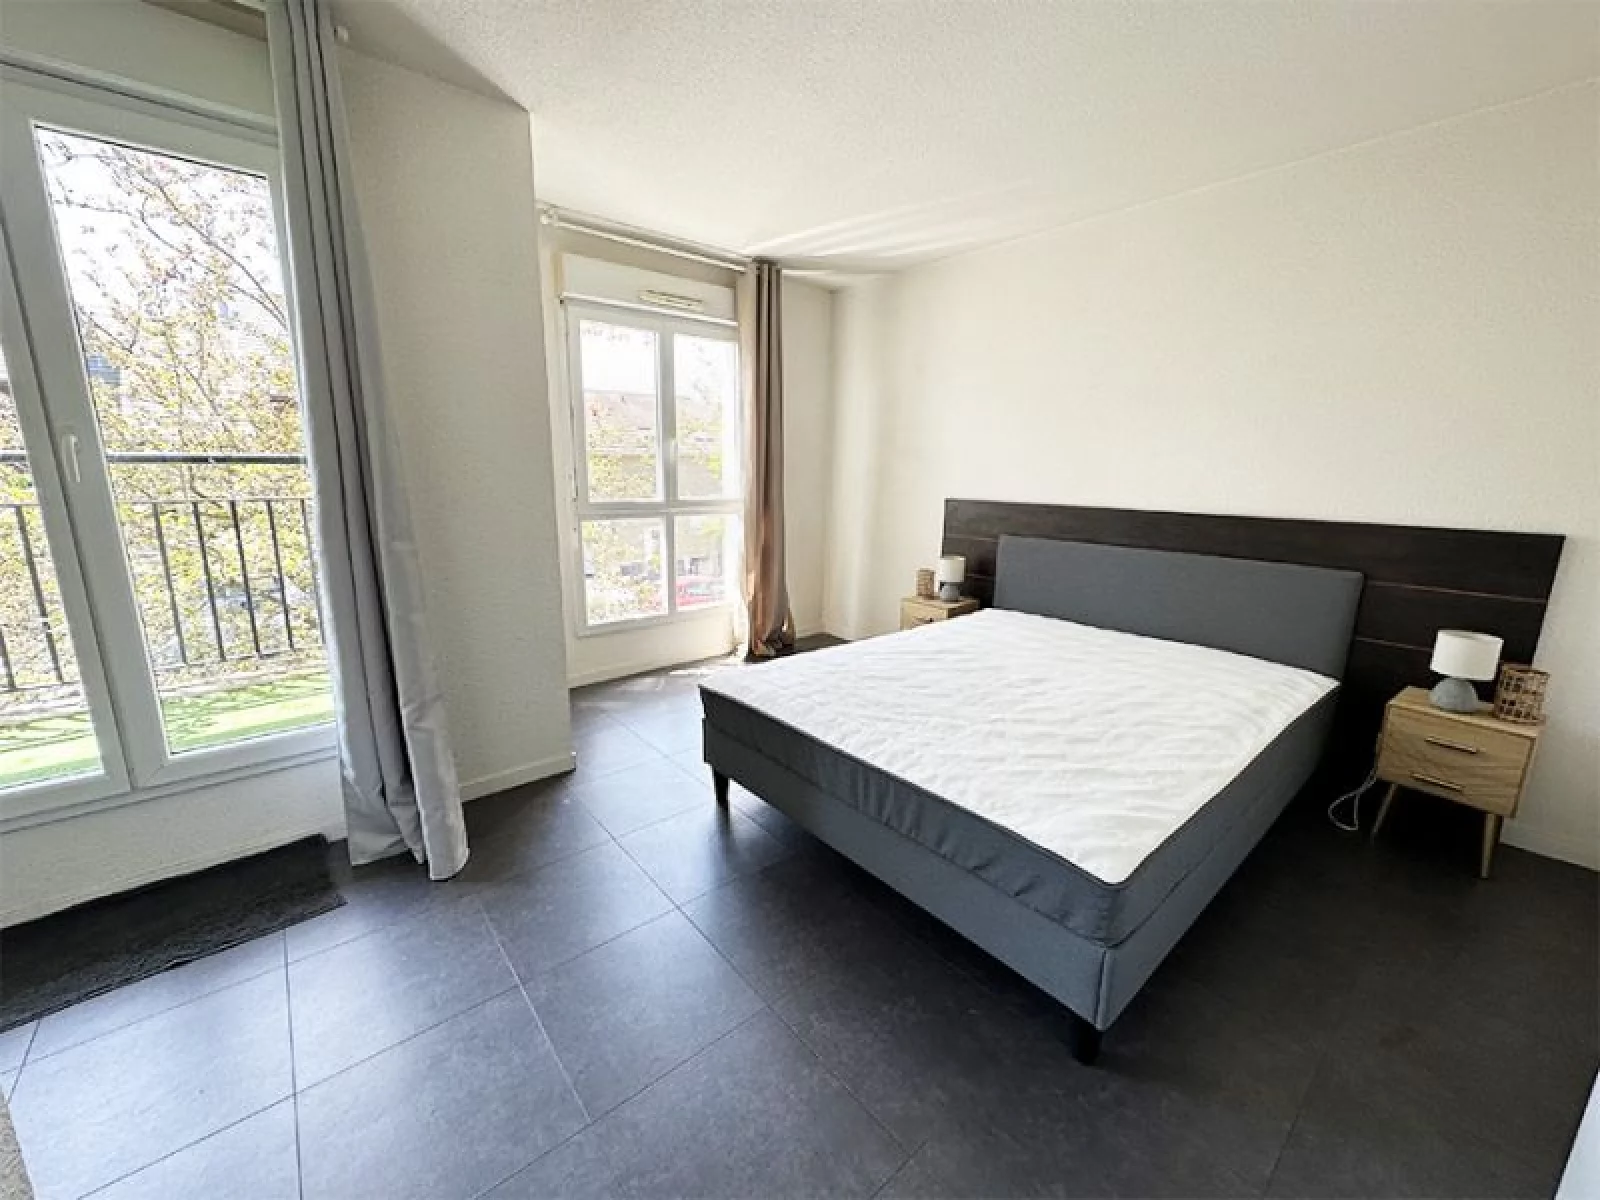 Location appartement duplex meublé 2 pièces 47m² (Paris est - Bry sur Marne)